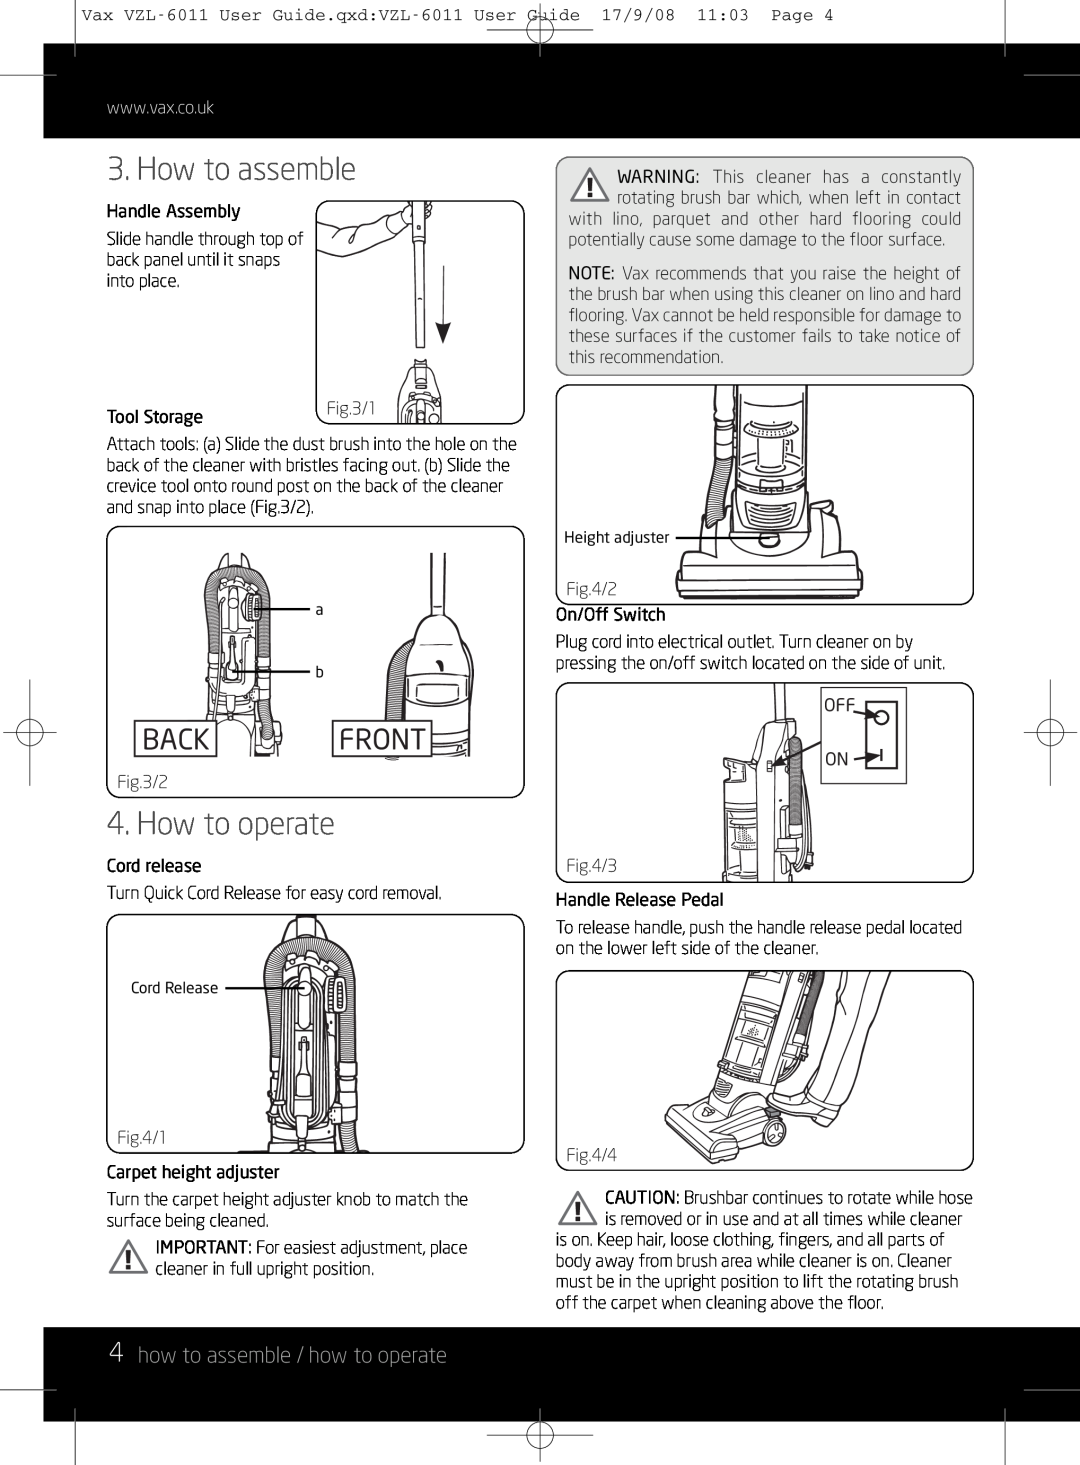 Vizio VZL-6011 instruction manual How to assemble, How to operate, 4how to assemble / how to operate, Back, Front 